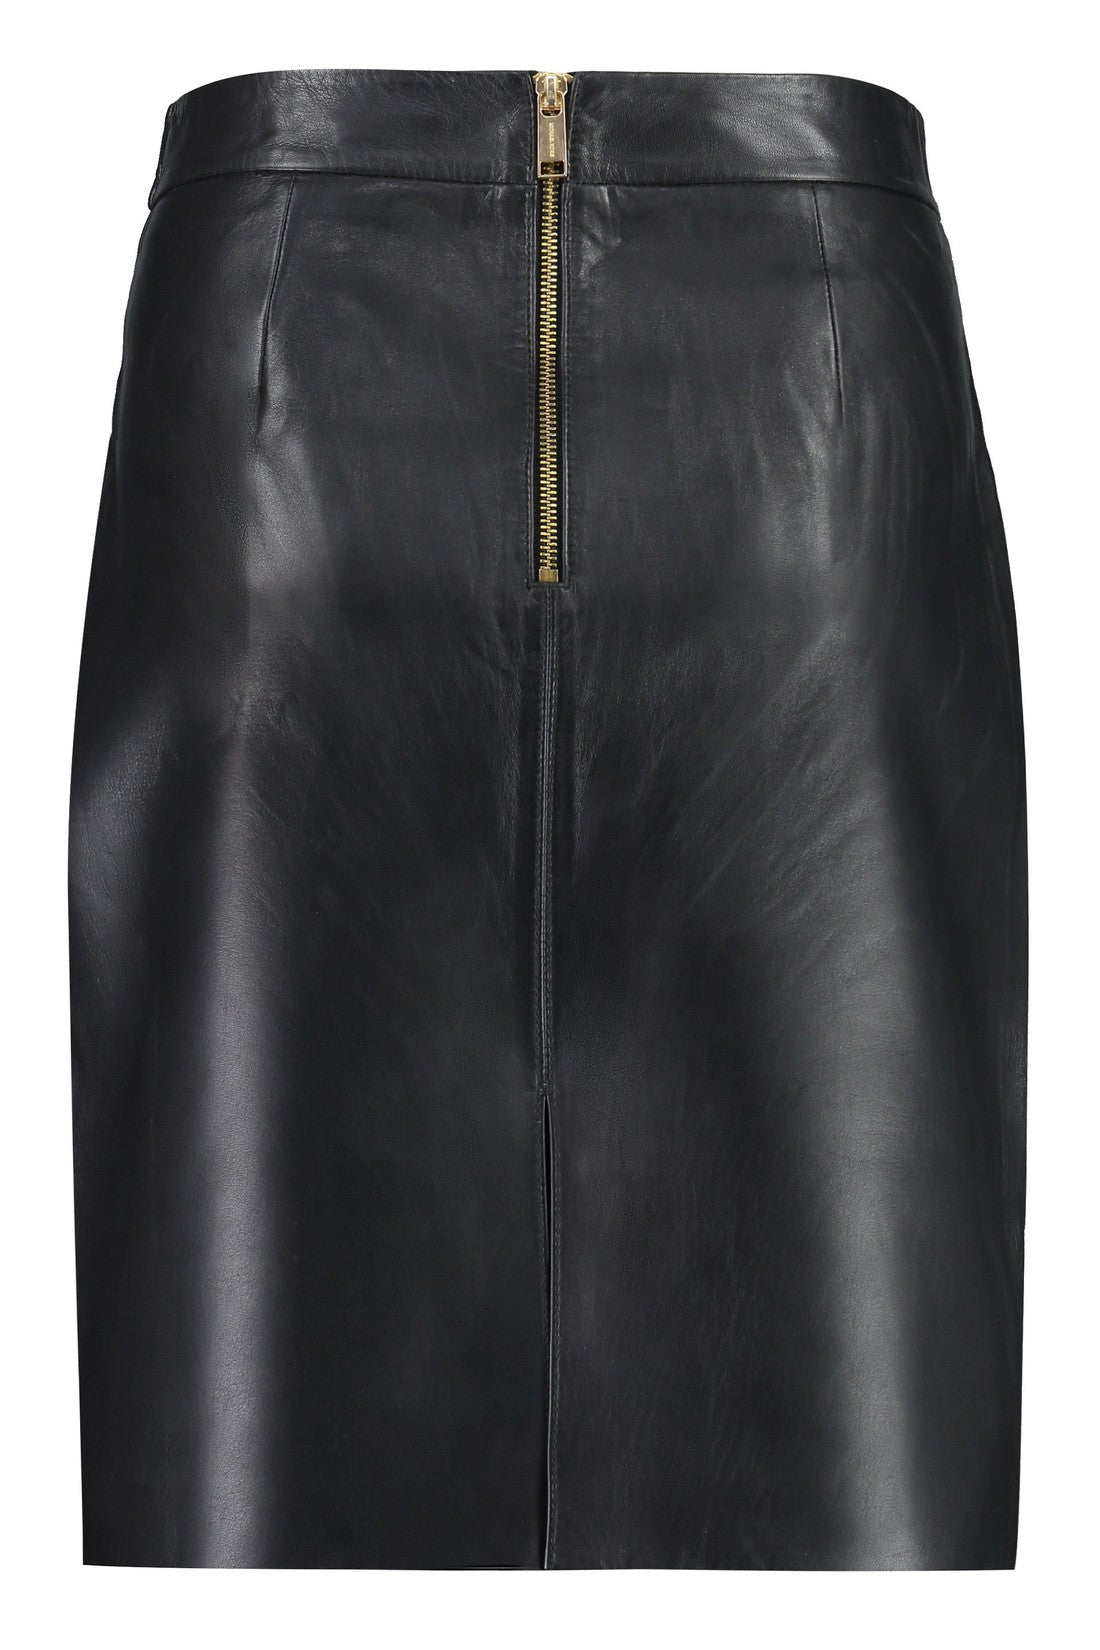 MICHAEL MICHAEL KORS-OUTLET-SALE-Faux leather skirt-ARCHIVIST